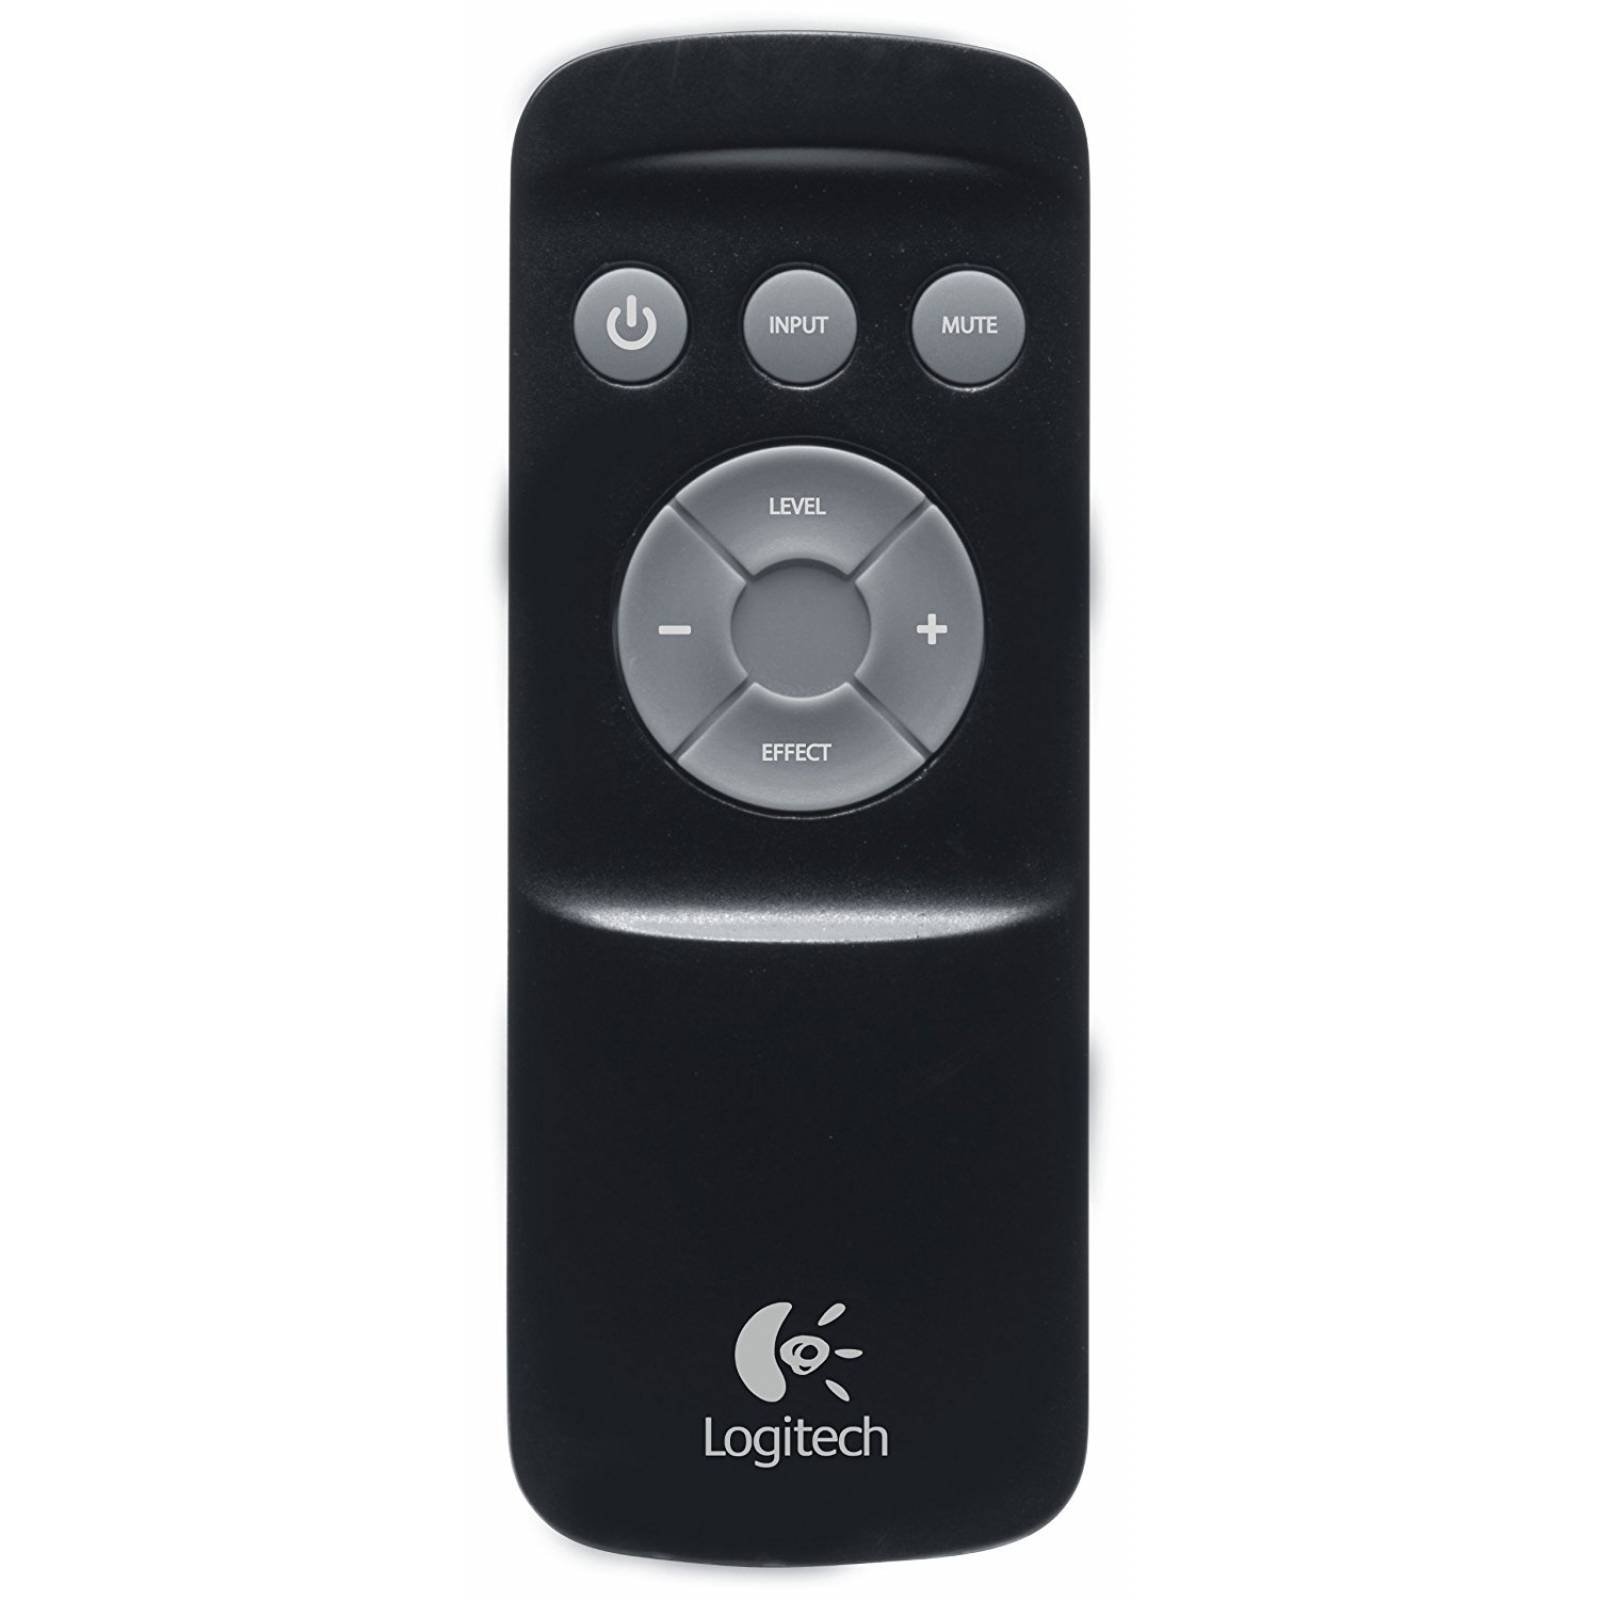 Logitech Z906 Surround Sound Speakers - Negro